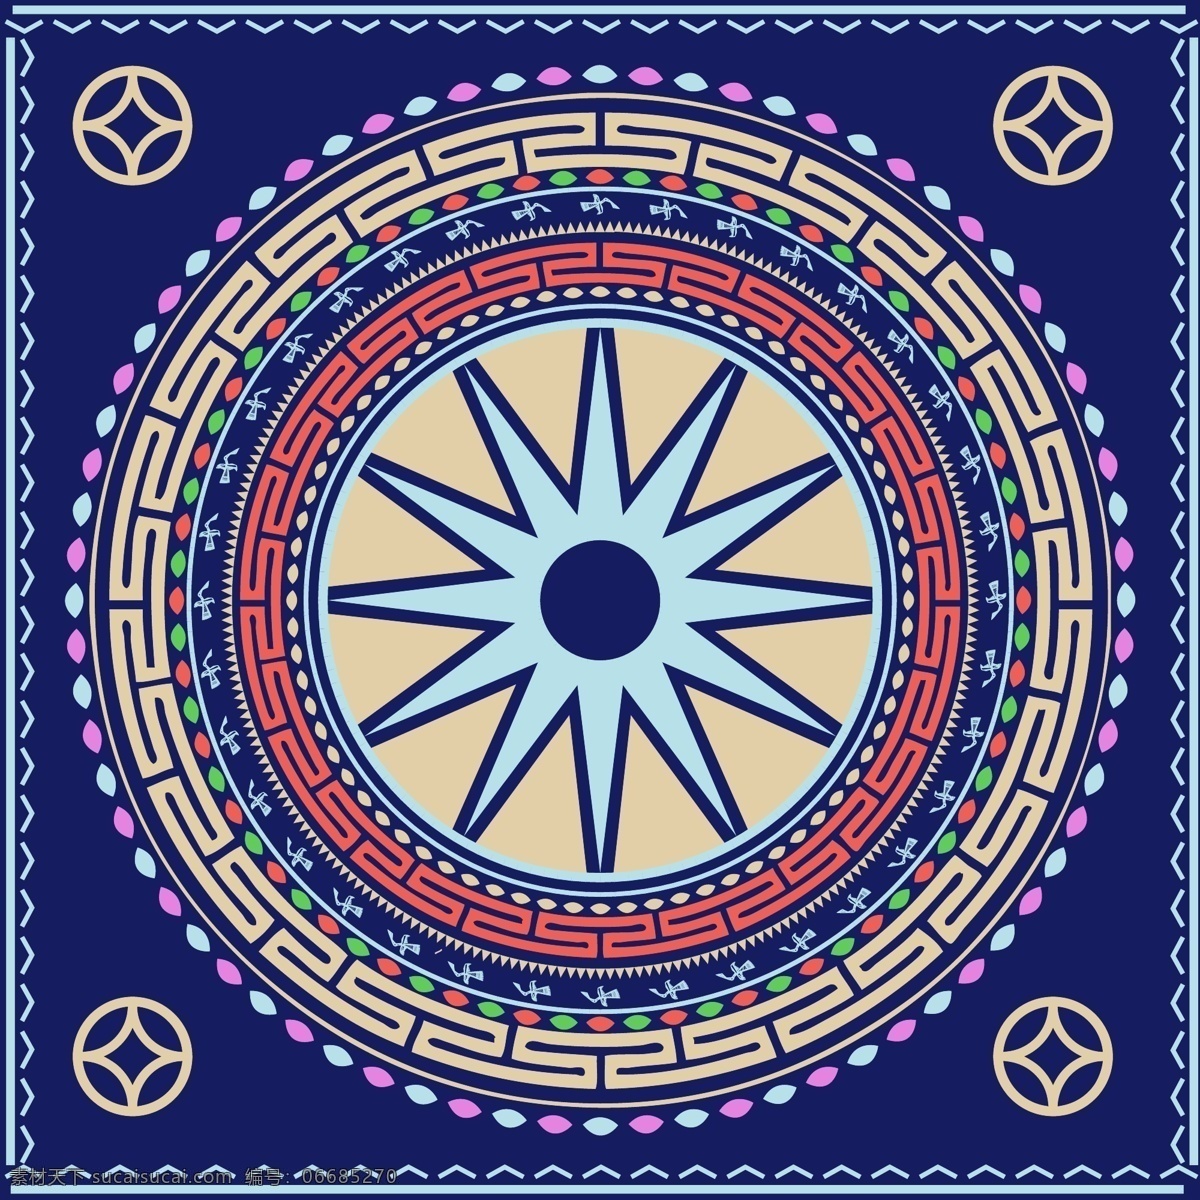 民族文化铜鼓 民族风 铜鼓 丝巾 抱枕 创意 传统文化 丰富 多彩 文化艺术